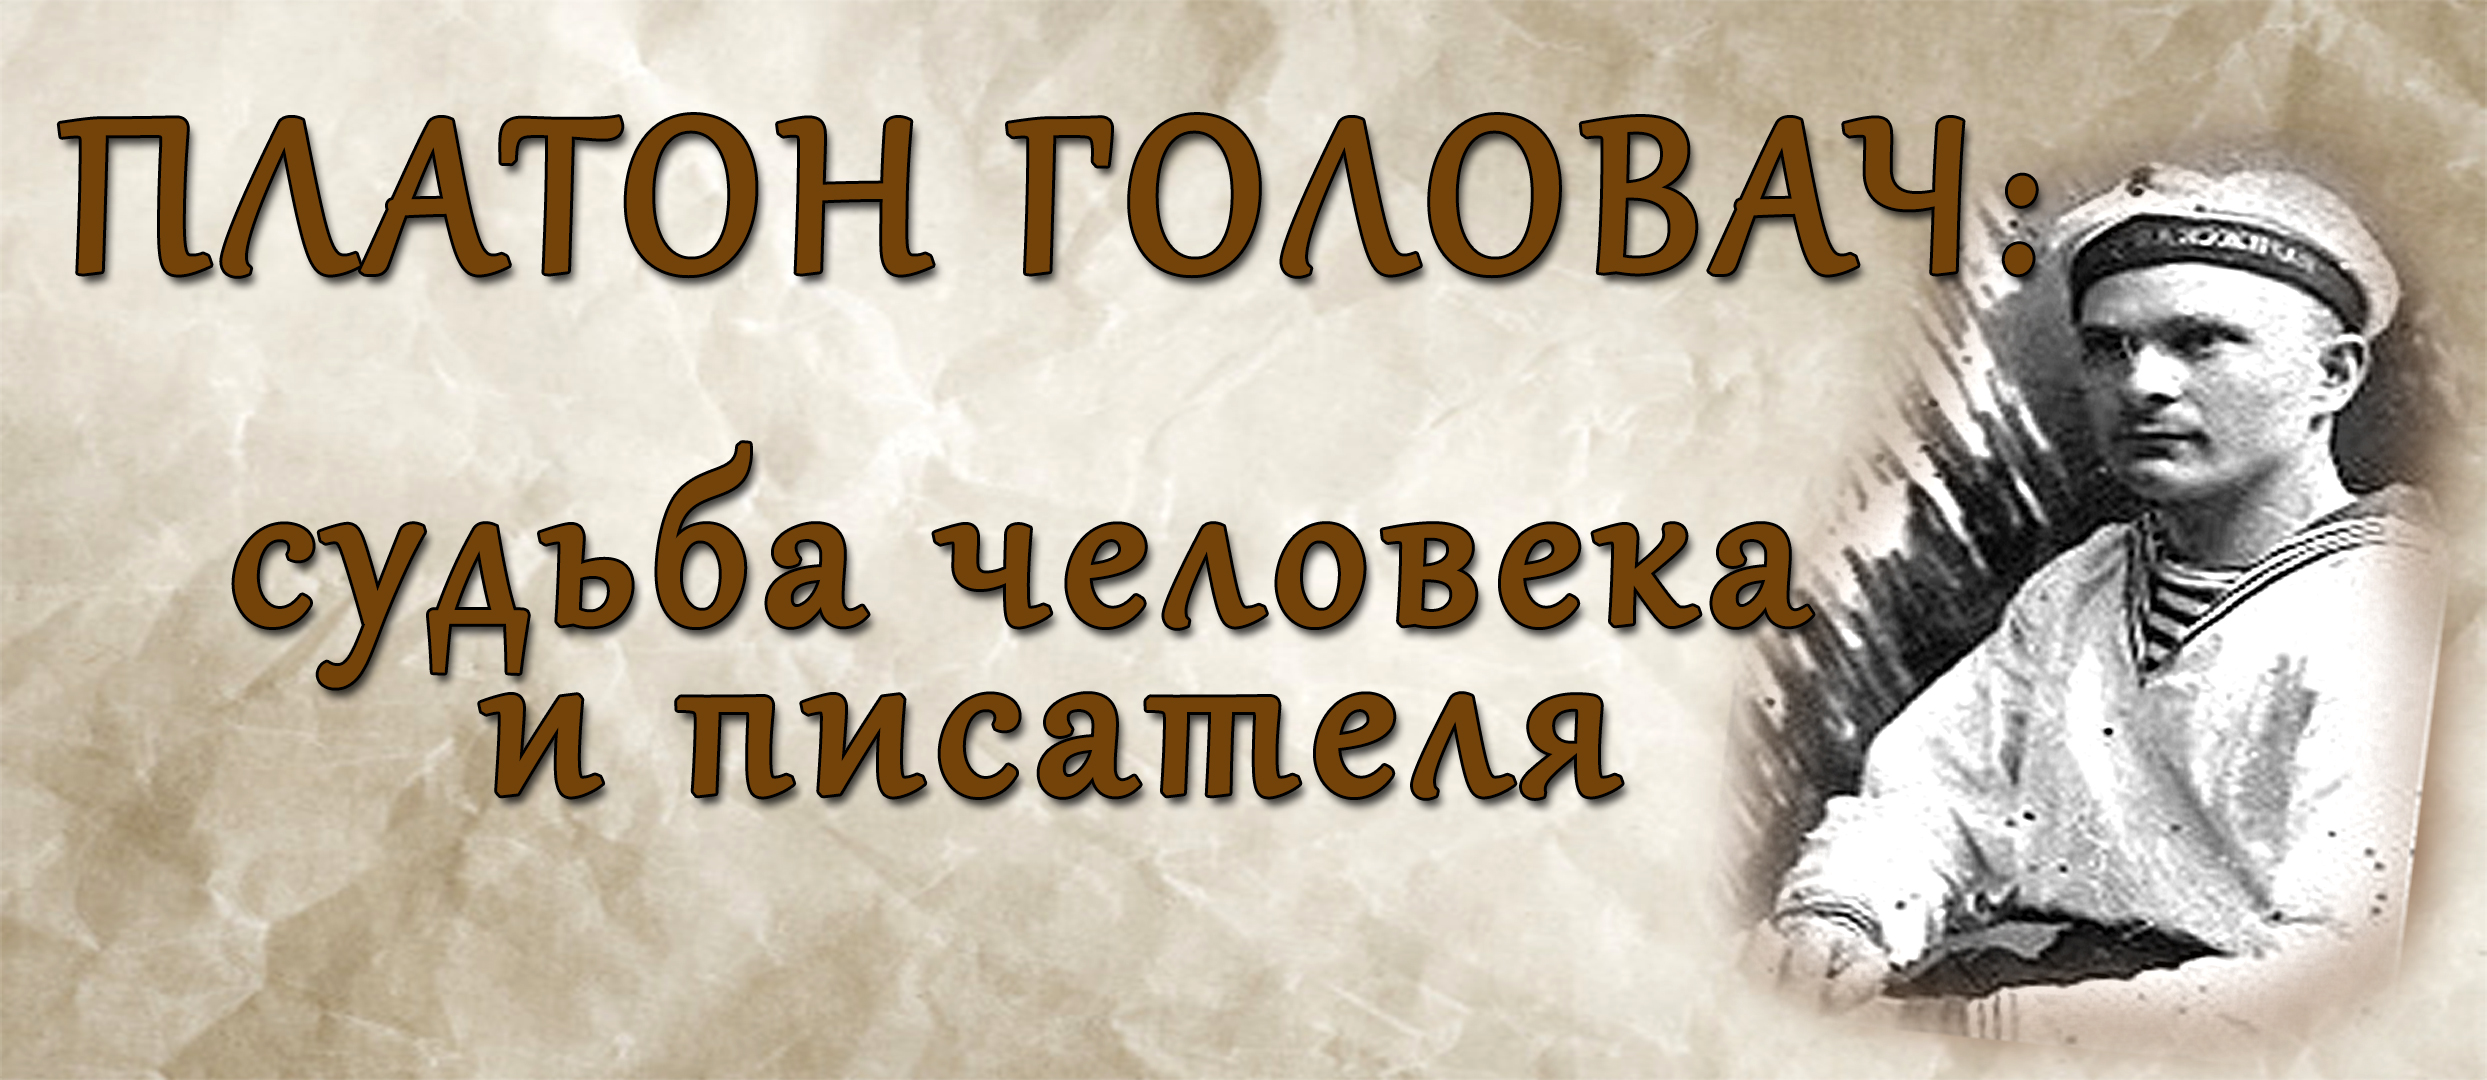 Сегодня исполняется 120 лет со дня рождения выдающегося земляка Платона Головача